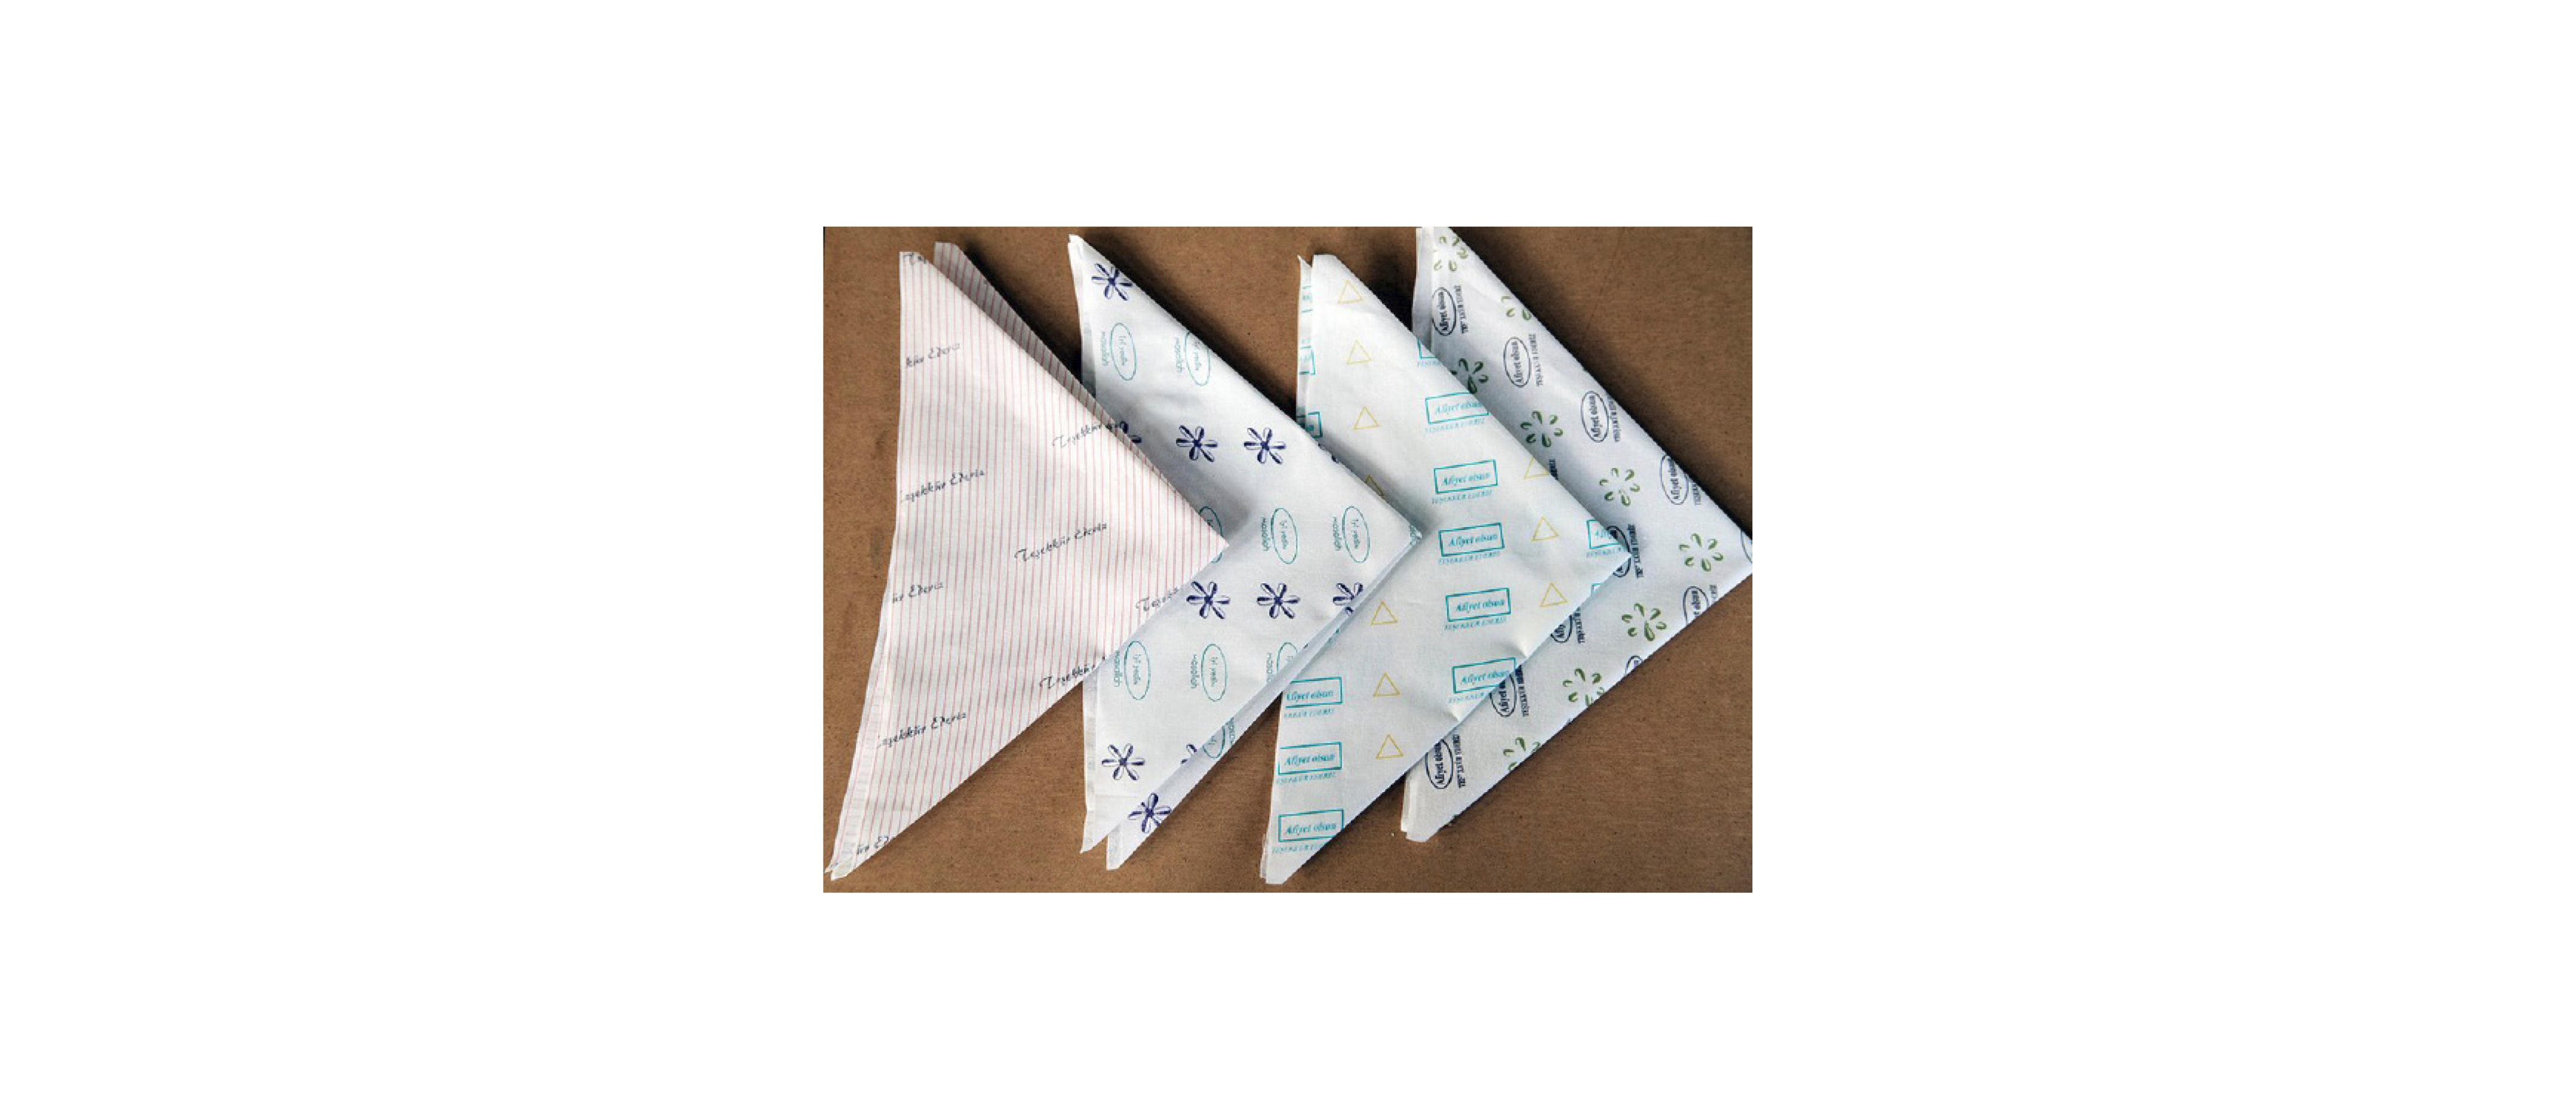 Defamiliarizing napkins